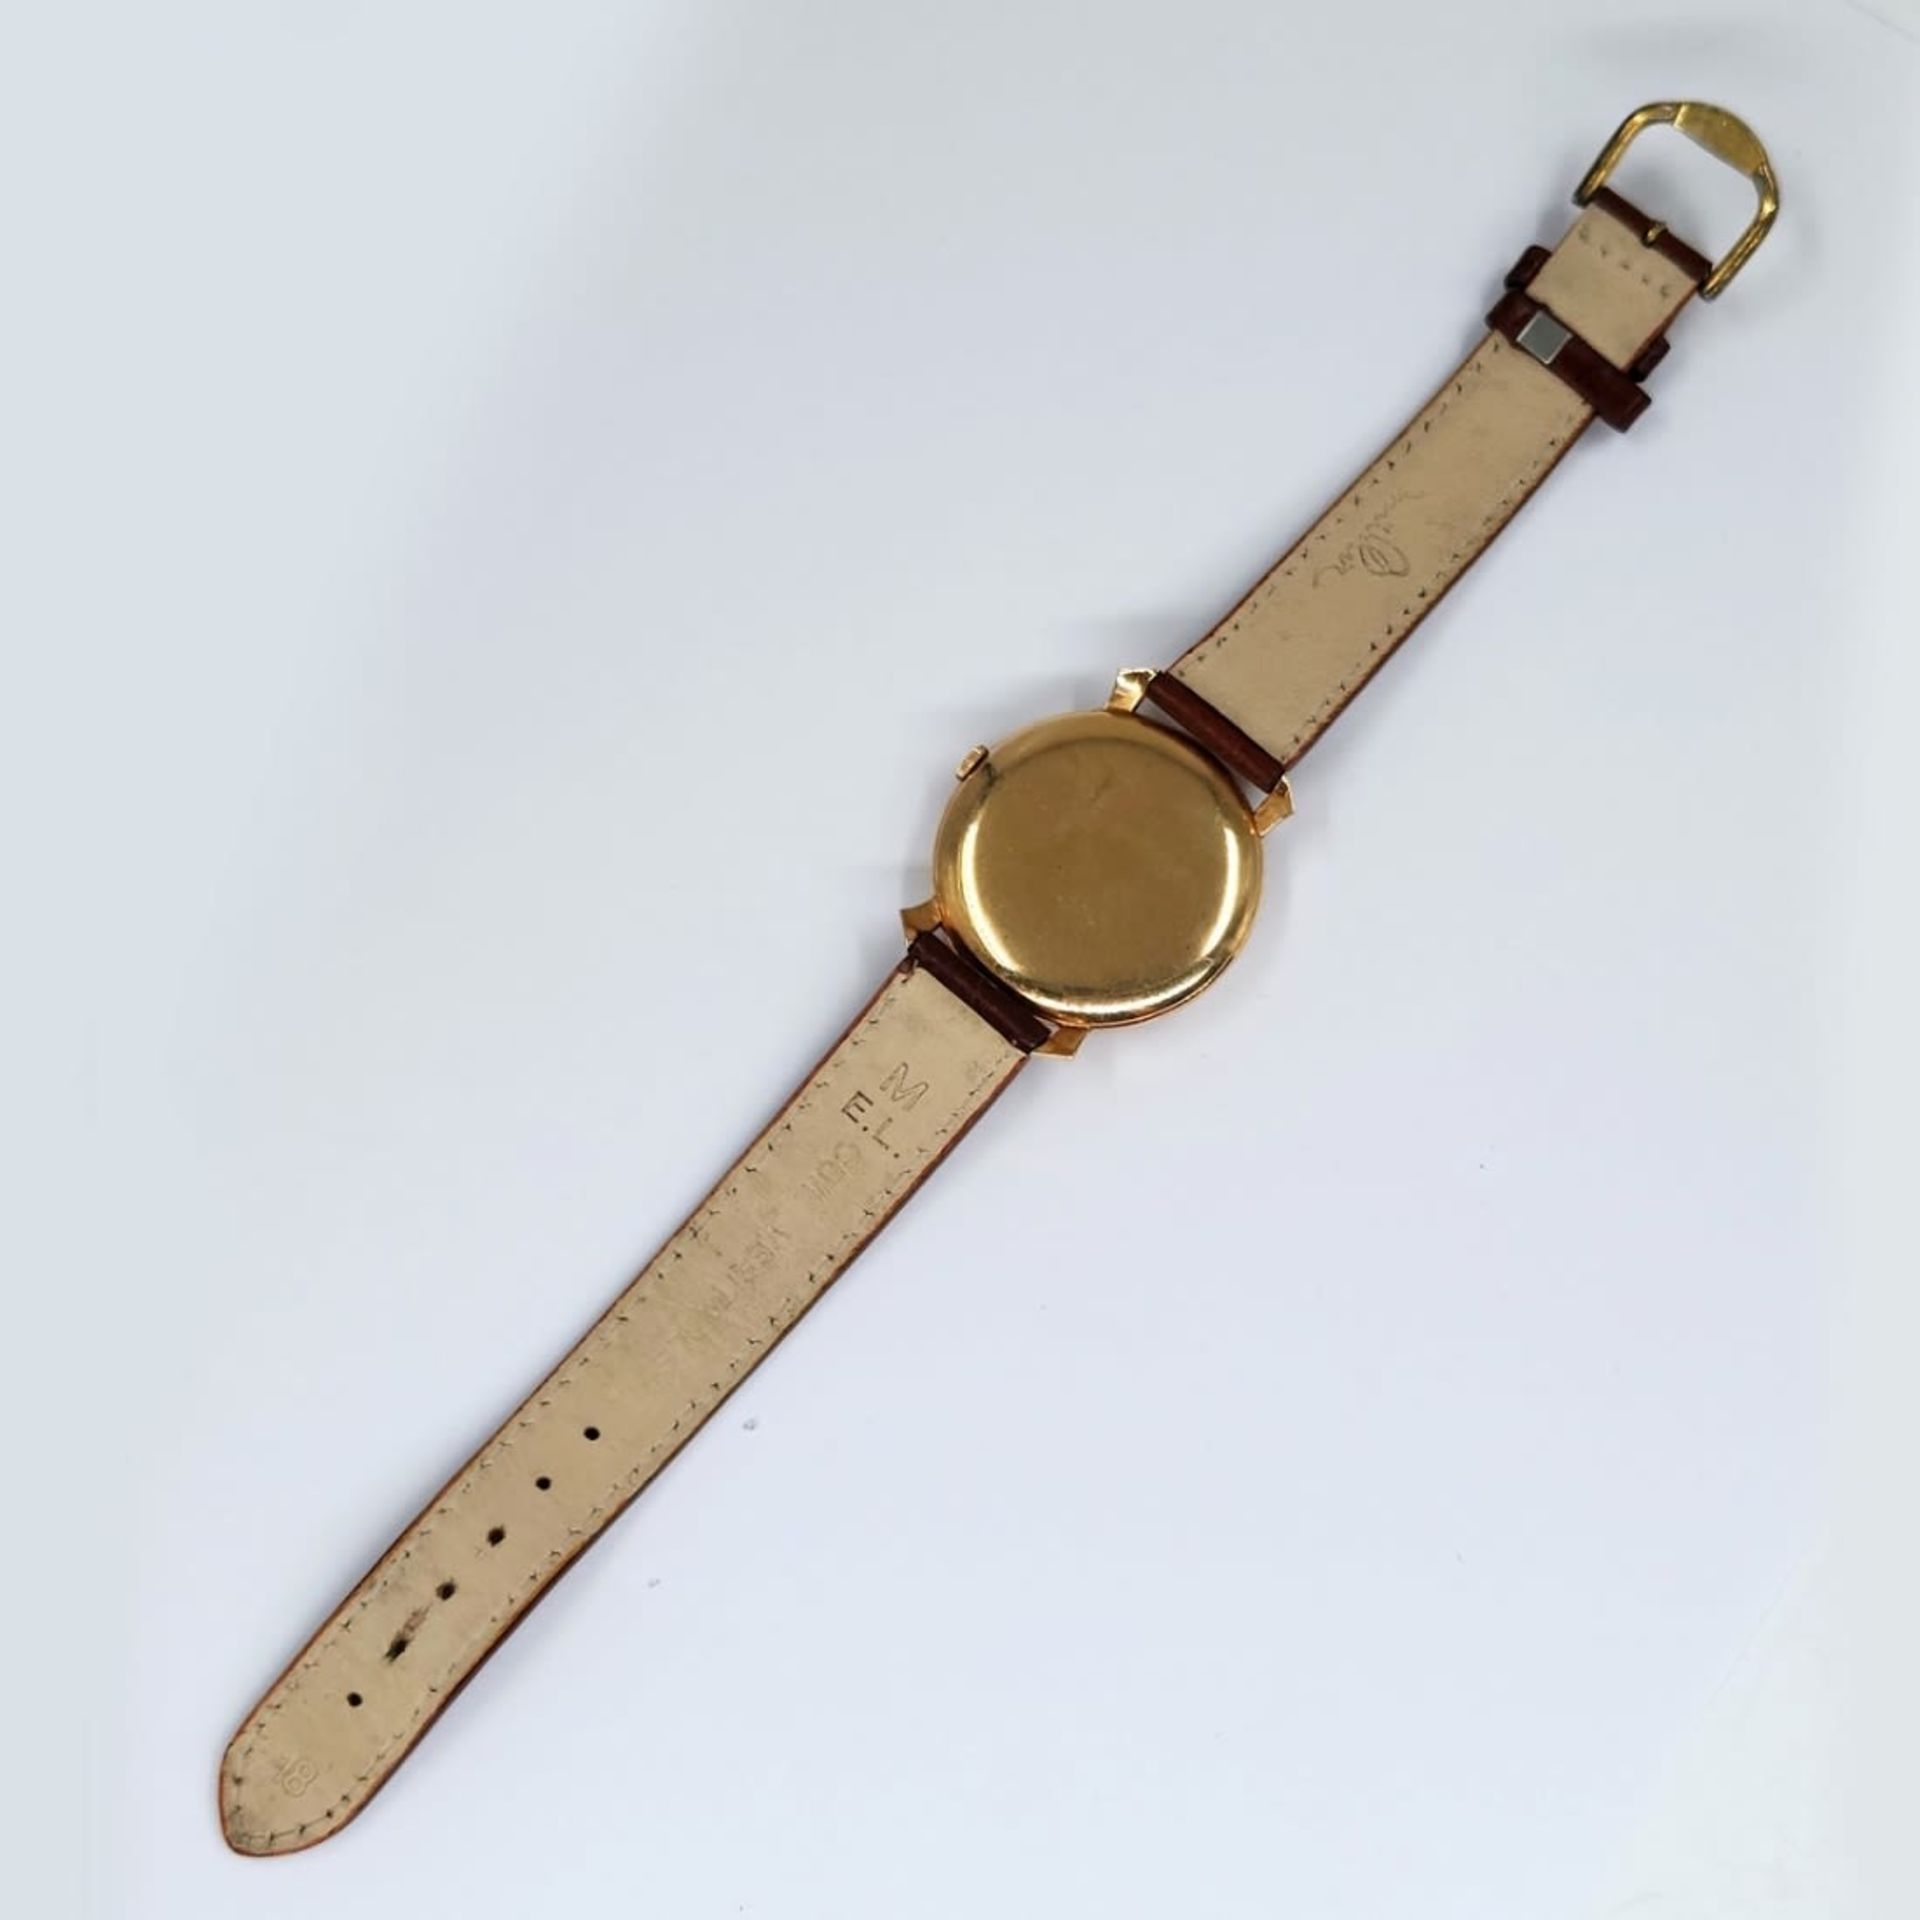 Wristwatch for men made by: 'Schaffhausen', 14k yellow gold, brown leather strap, working - Bild 4 aus 4